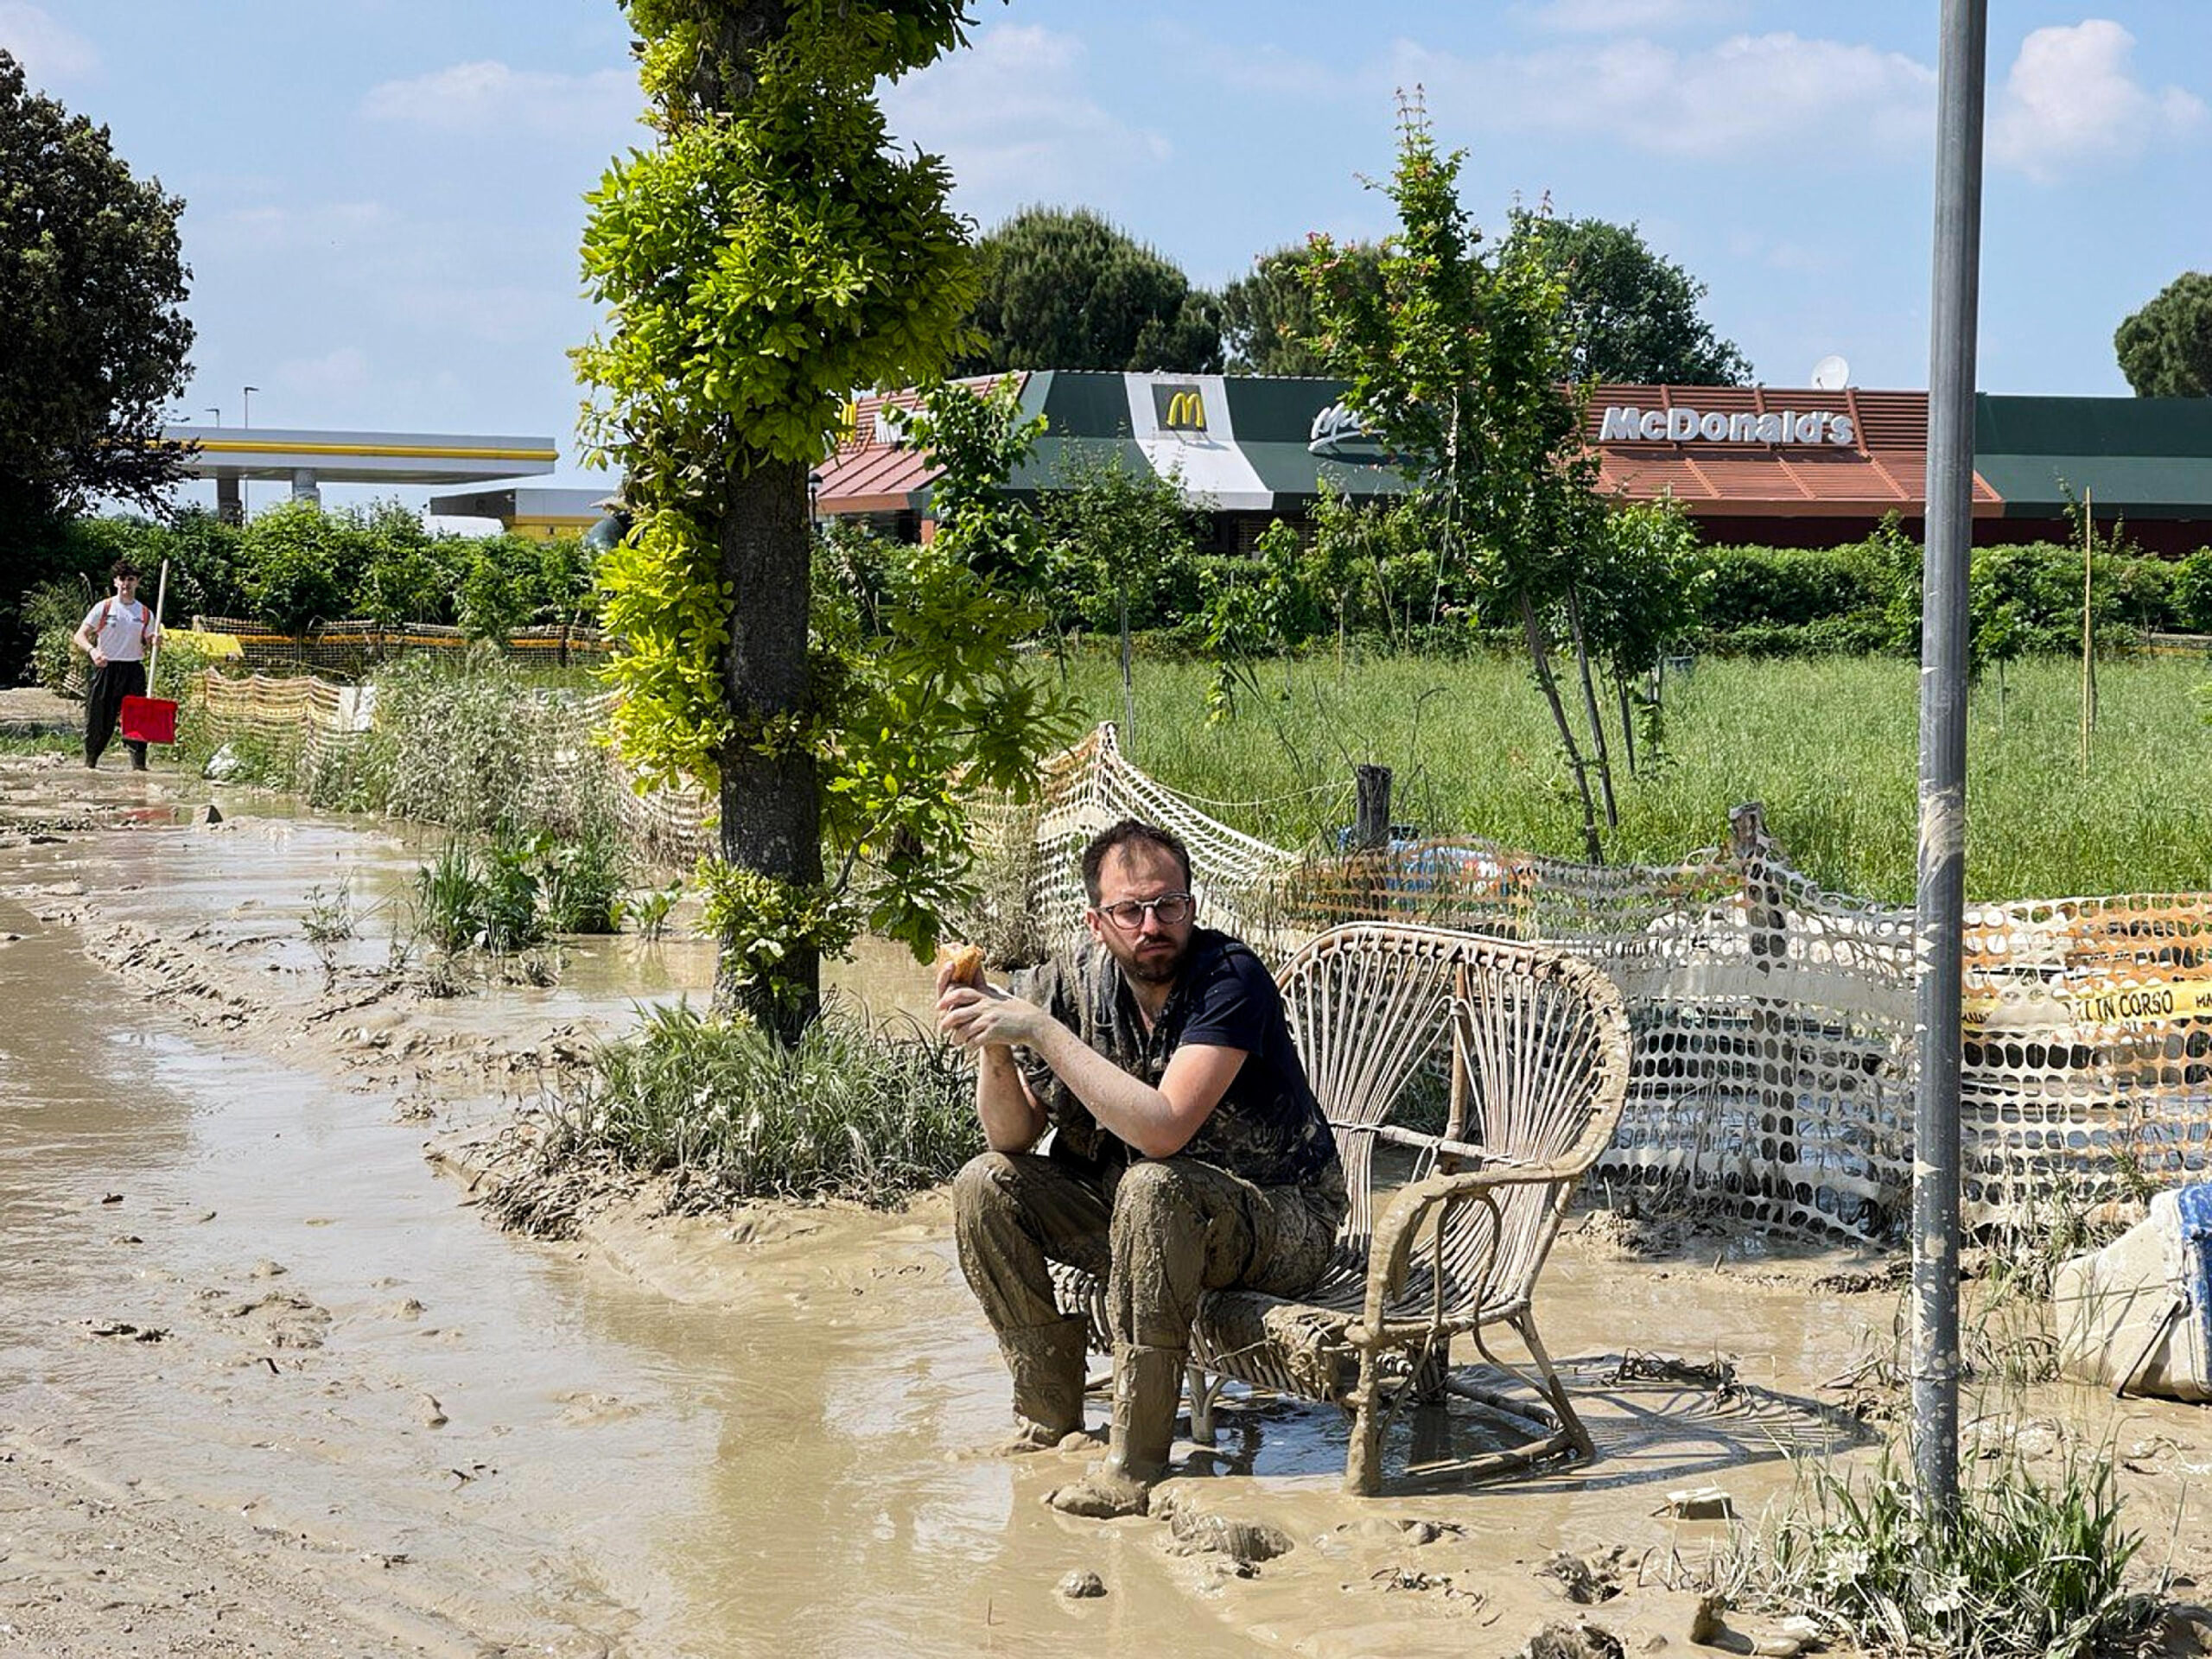 Un ragazzo durante un momento di riposo dal lavoro di ripulitura dopo l'alluvione che ha colpito Forlì, 22 maggio 2023.
ANSA/FRANCESCO ARRIGONI